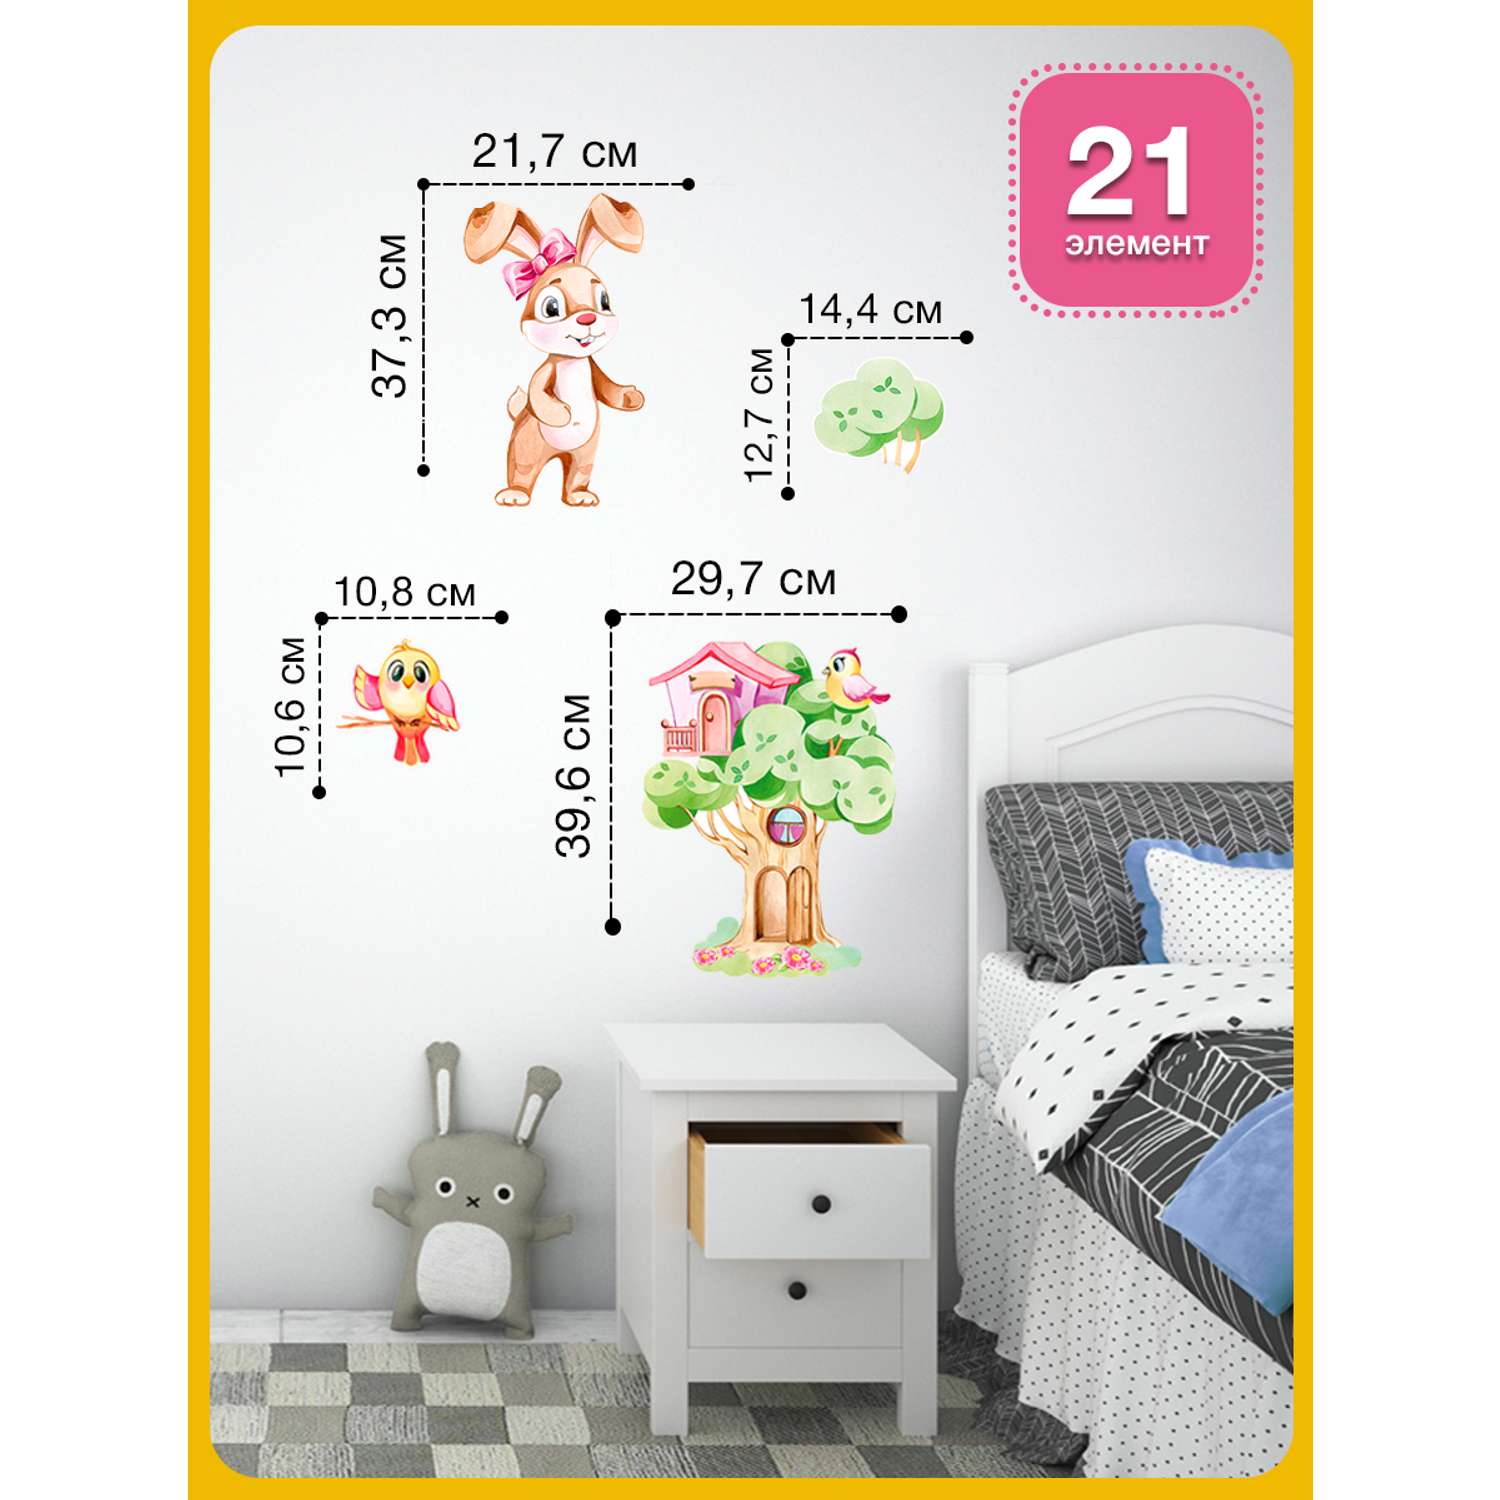 Наклейка оформительская ГК Горчаков на стену в детскую комнату с рисунком зайка для декора - фото 3